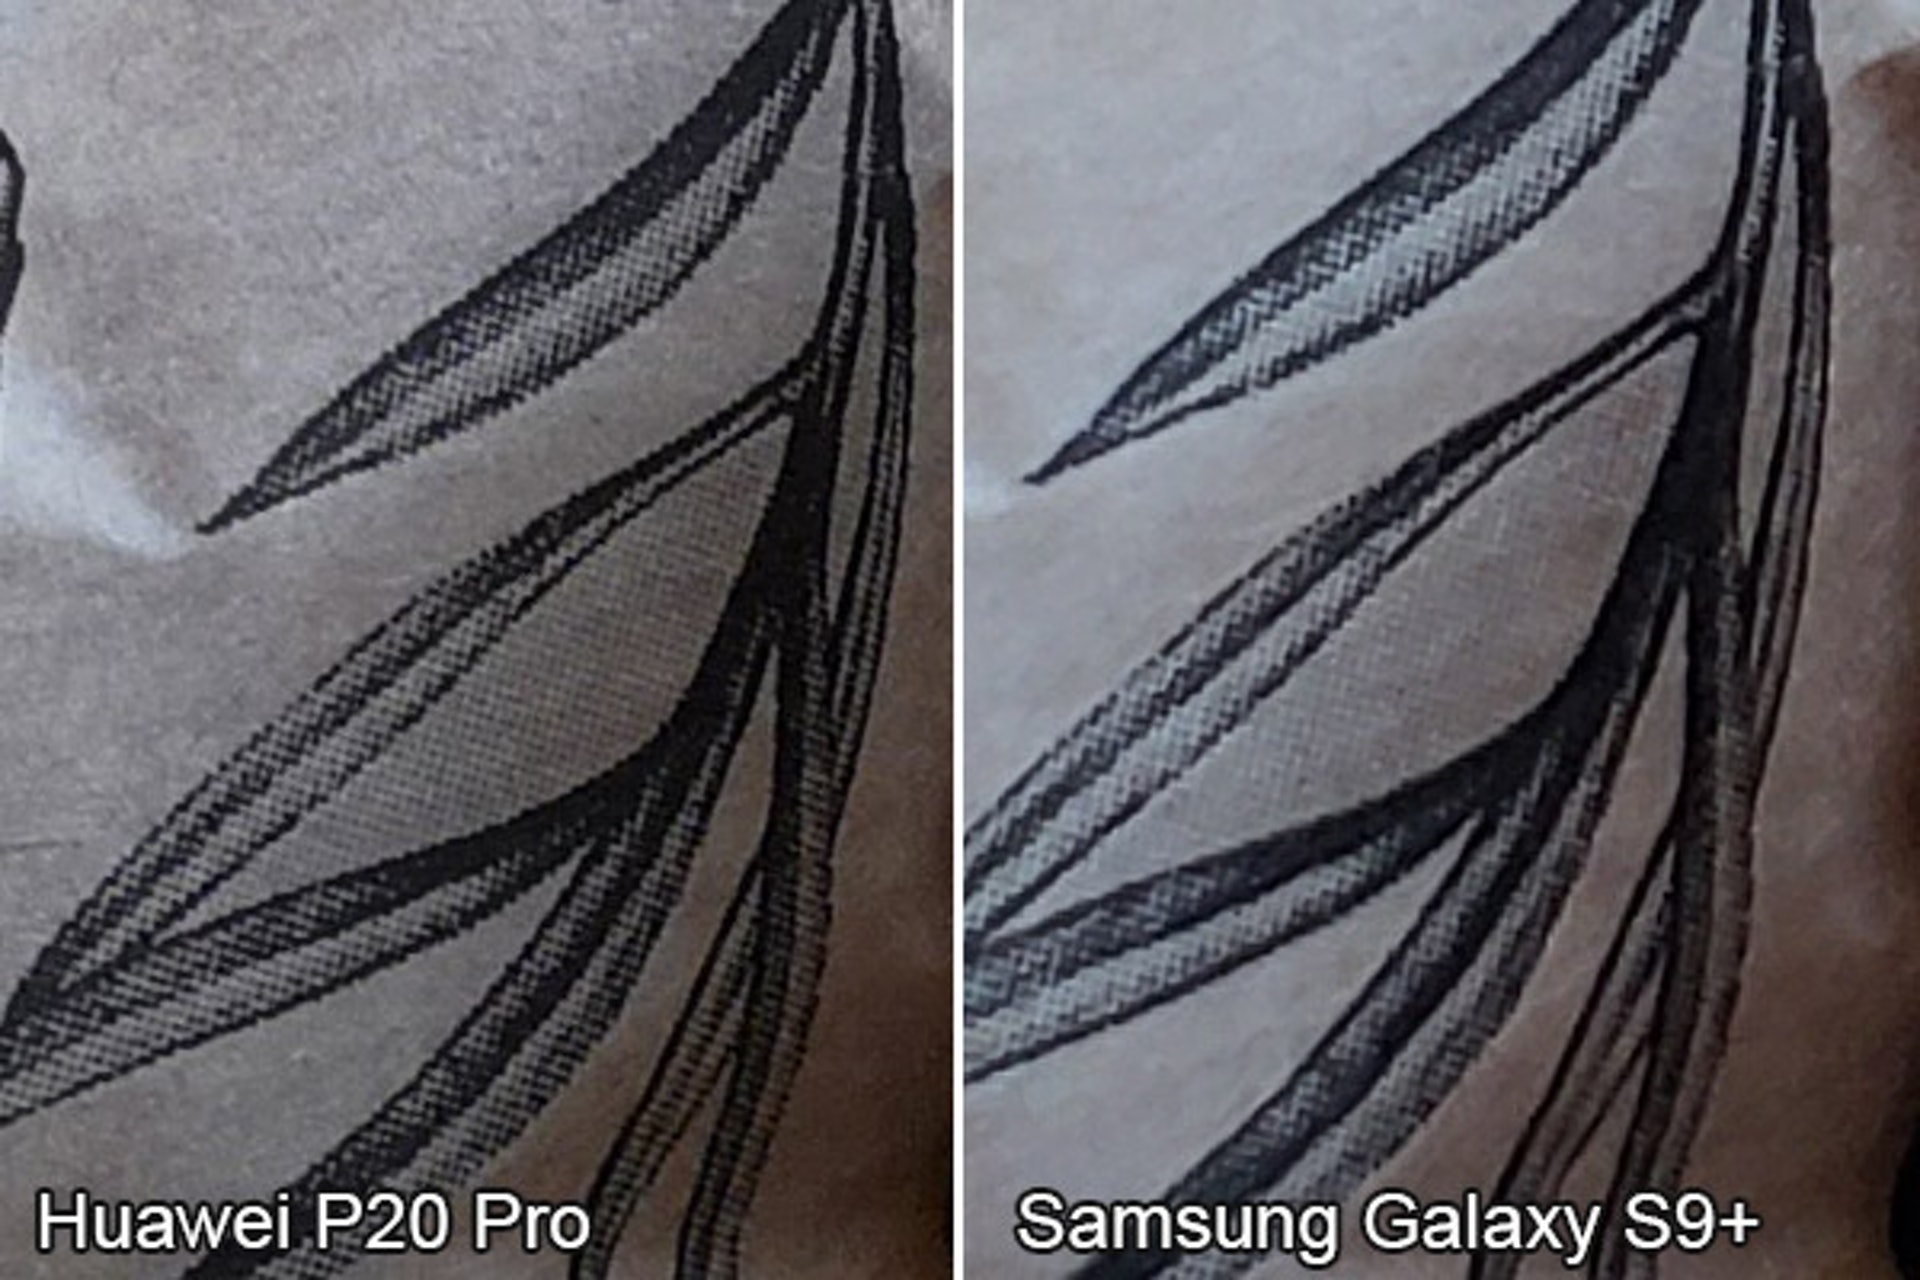 由於 ISO 感光度关是，留意在 P20 Pro 的相片中，包装纸上的印刷纹理较 S9+ 的更为清晰